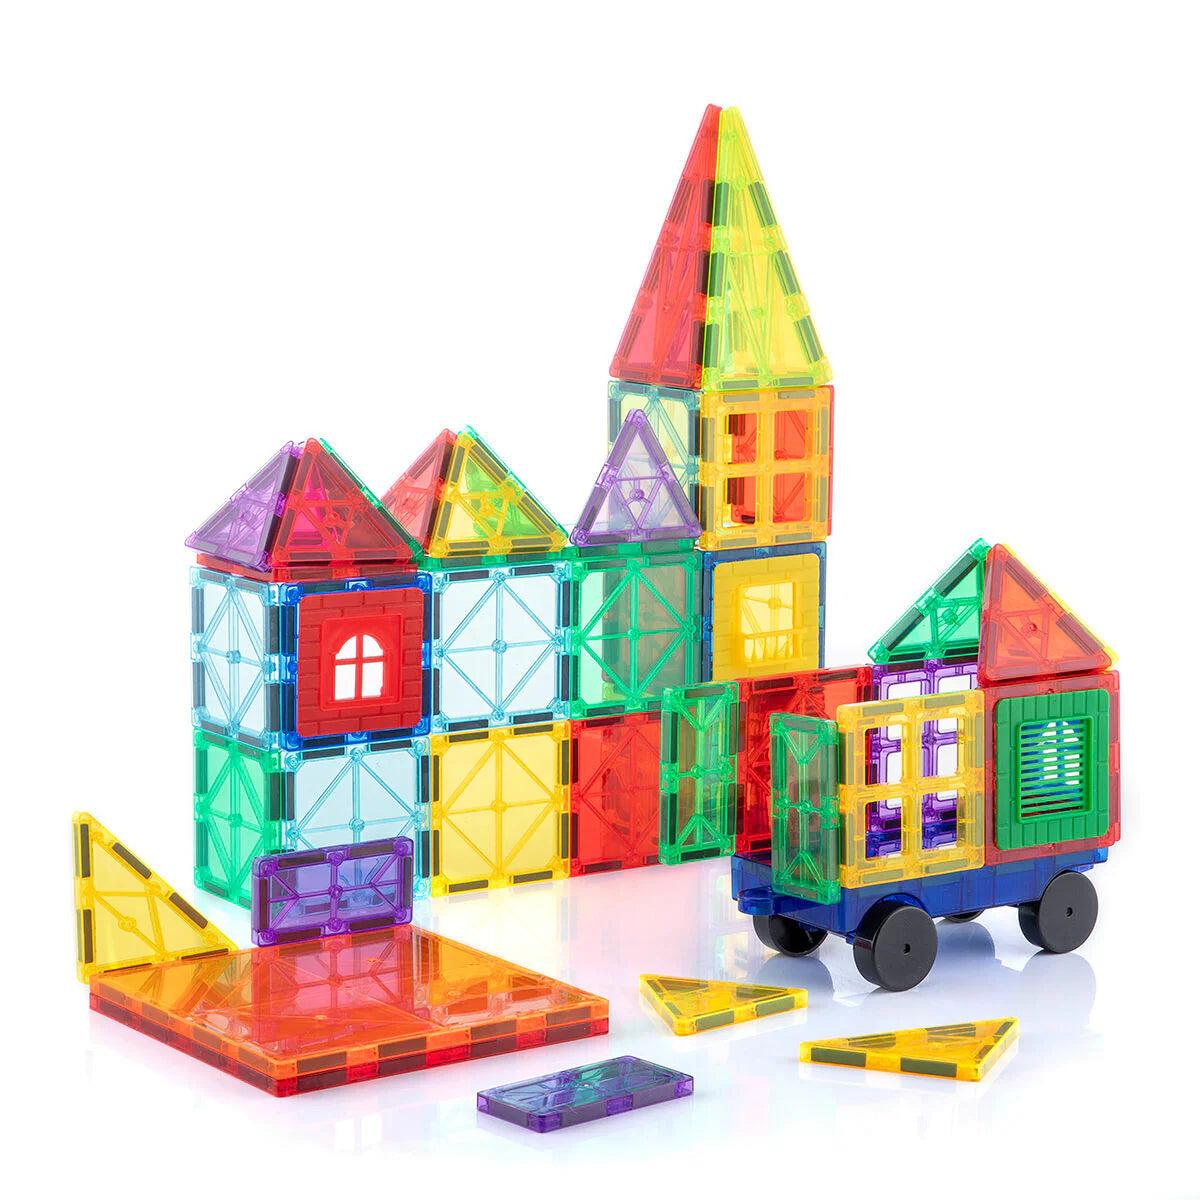 3D Magnetic Building Blocks 57 Pieces